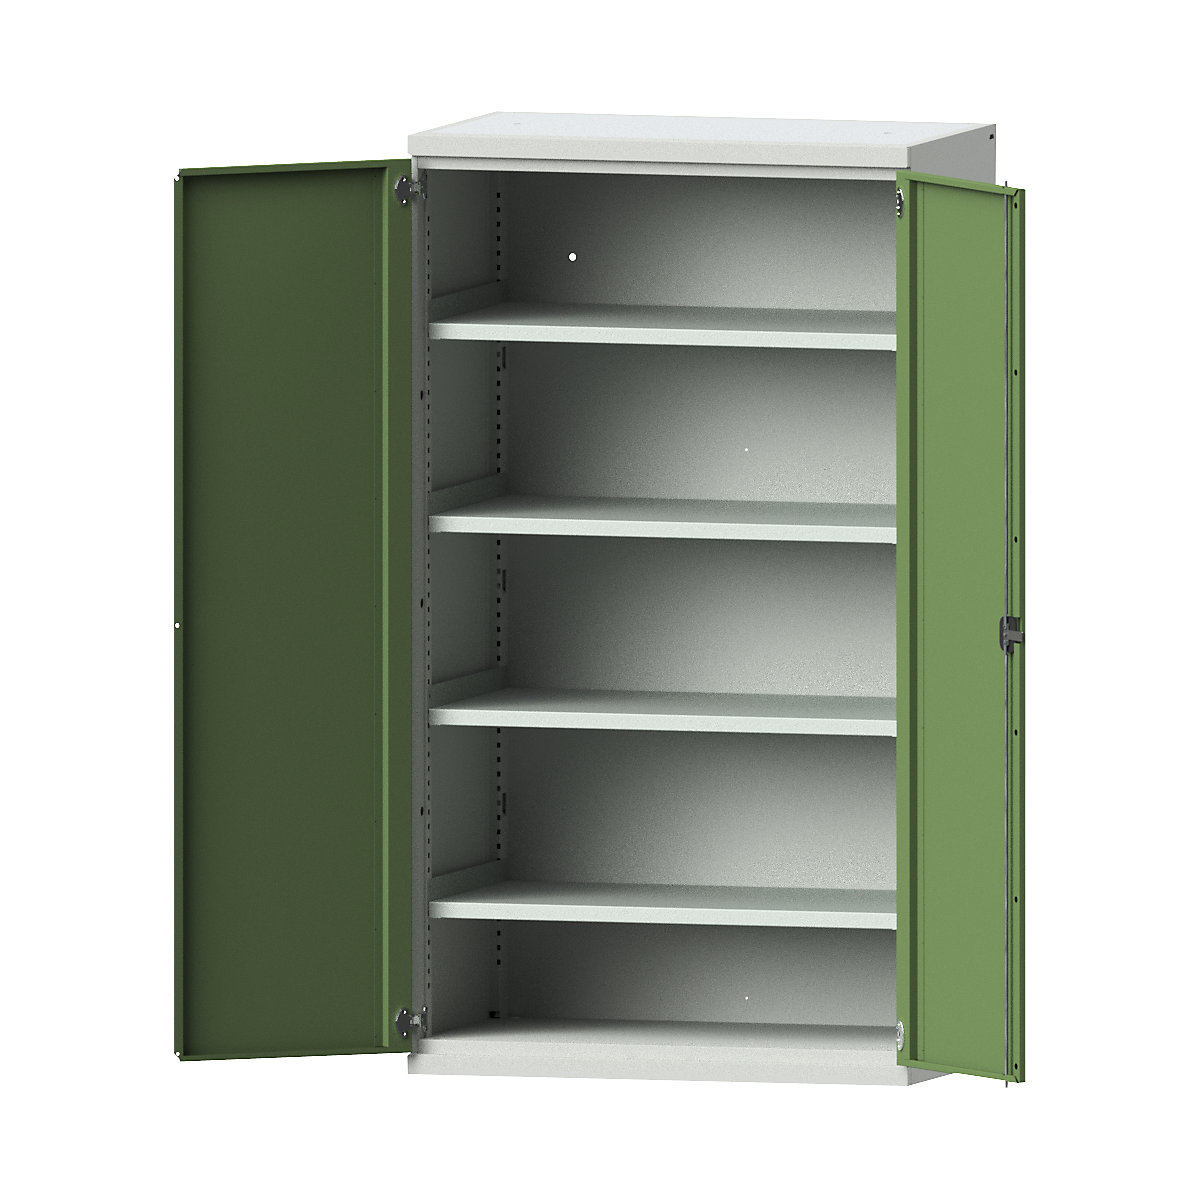 Heavy duty cupboard made of steel – eurokraft pro, 4 full-width shelves, light grey / reseda green-9